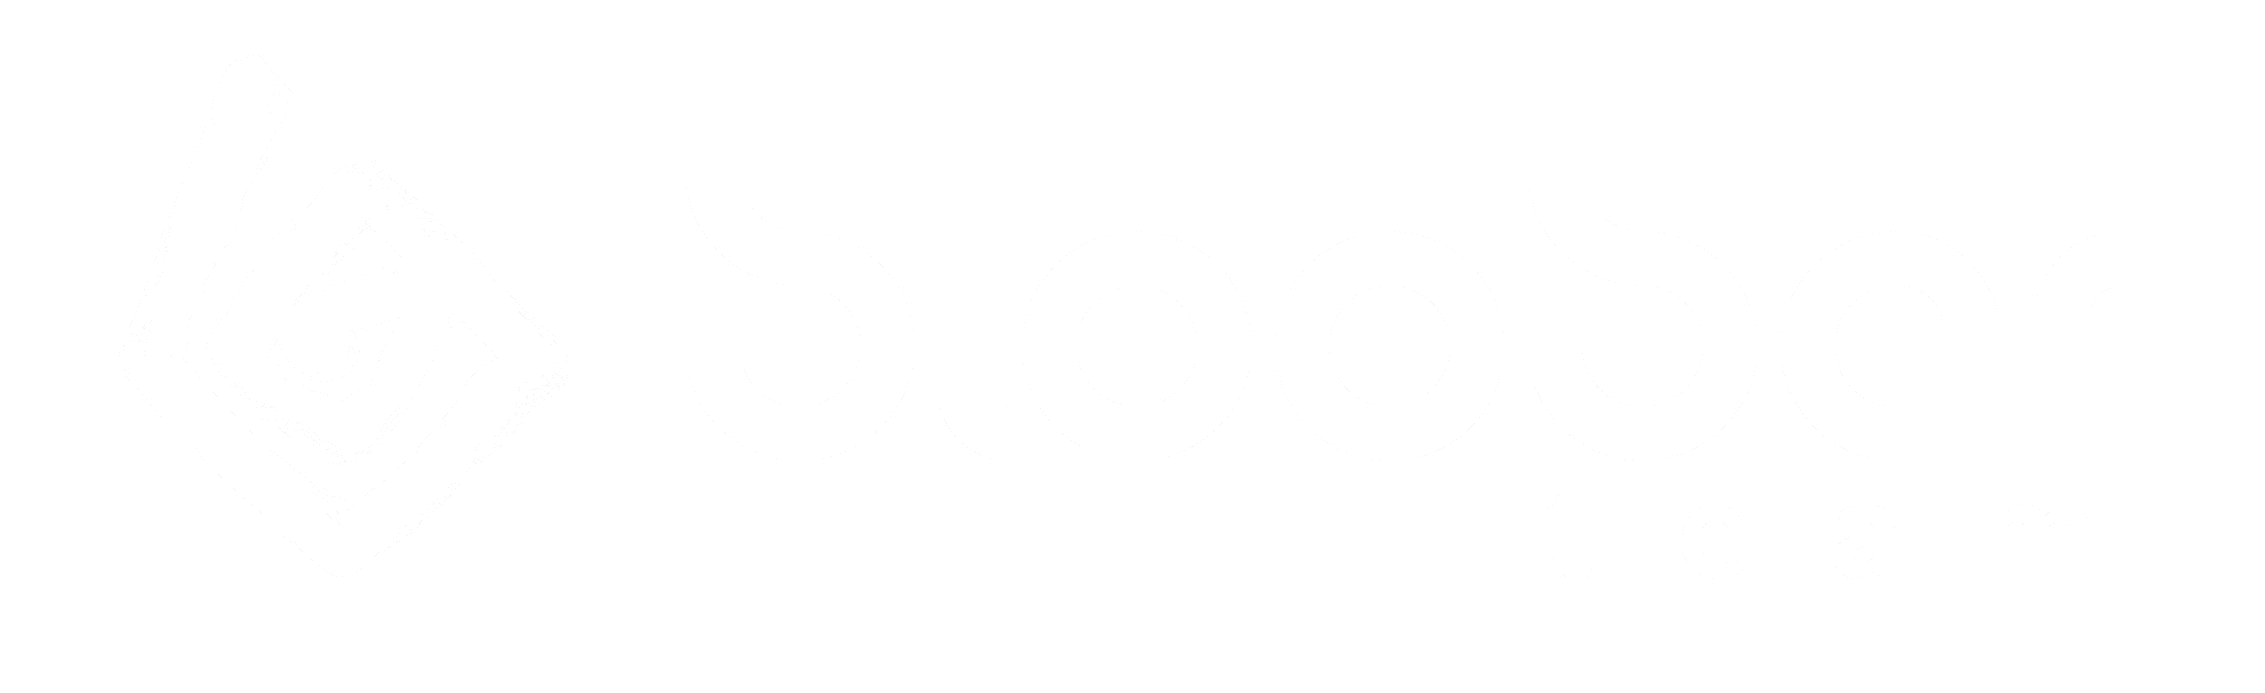 bloober